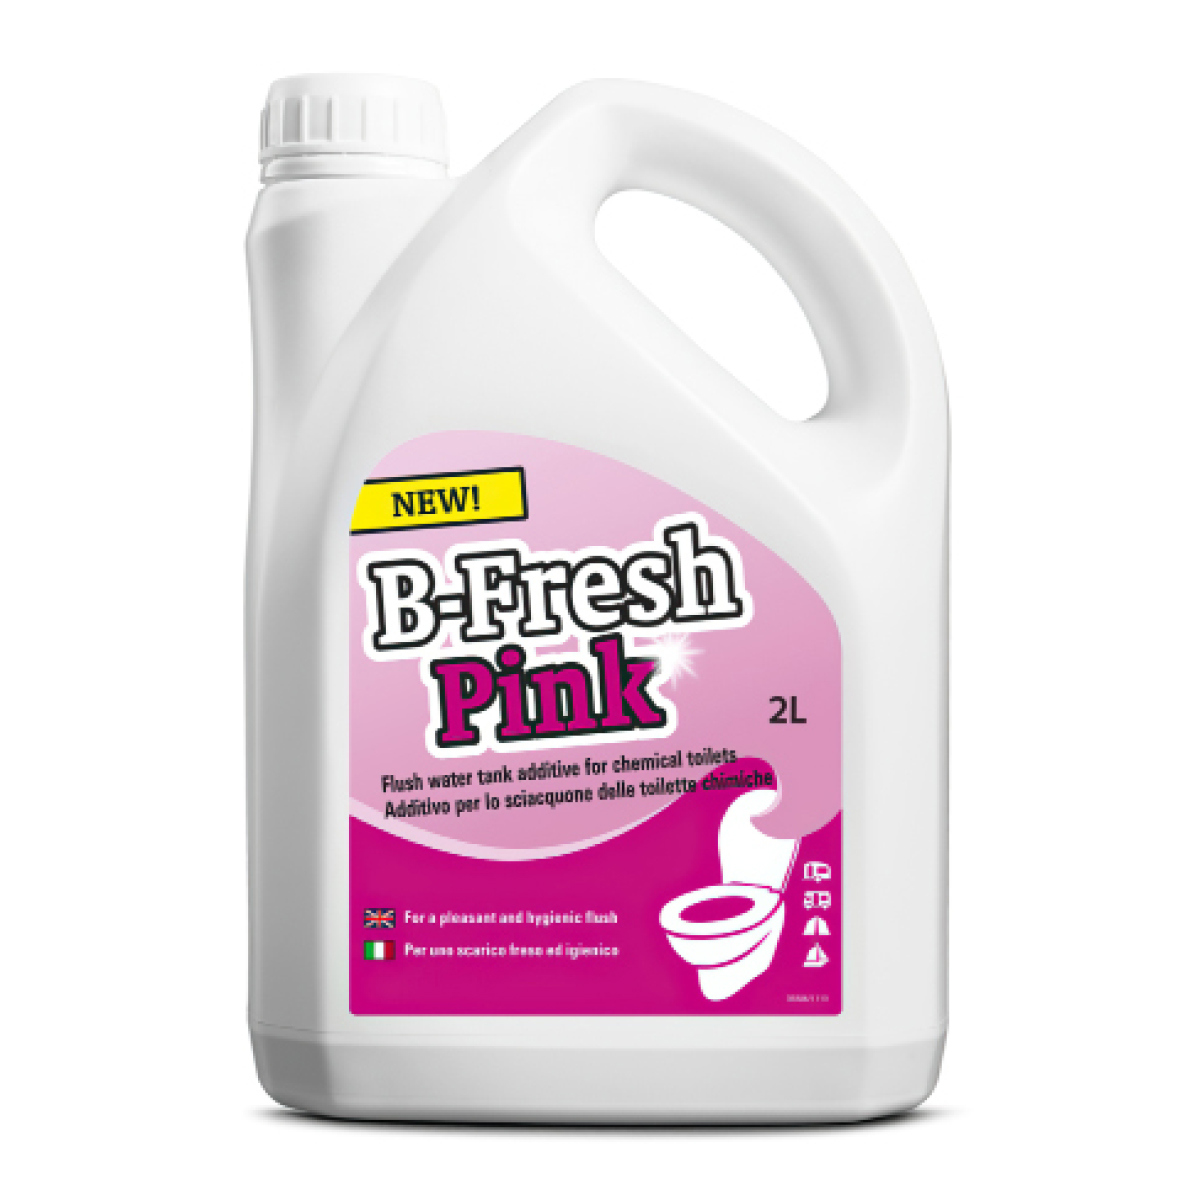 Жидкость для биотуалета Thetford B-FRESH PINK 2л ️  по цене 1030 .